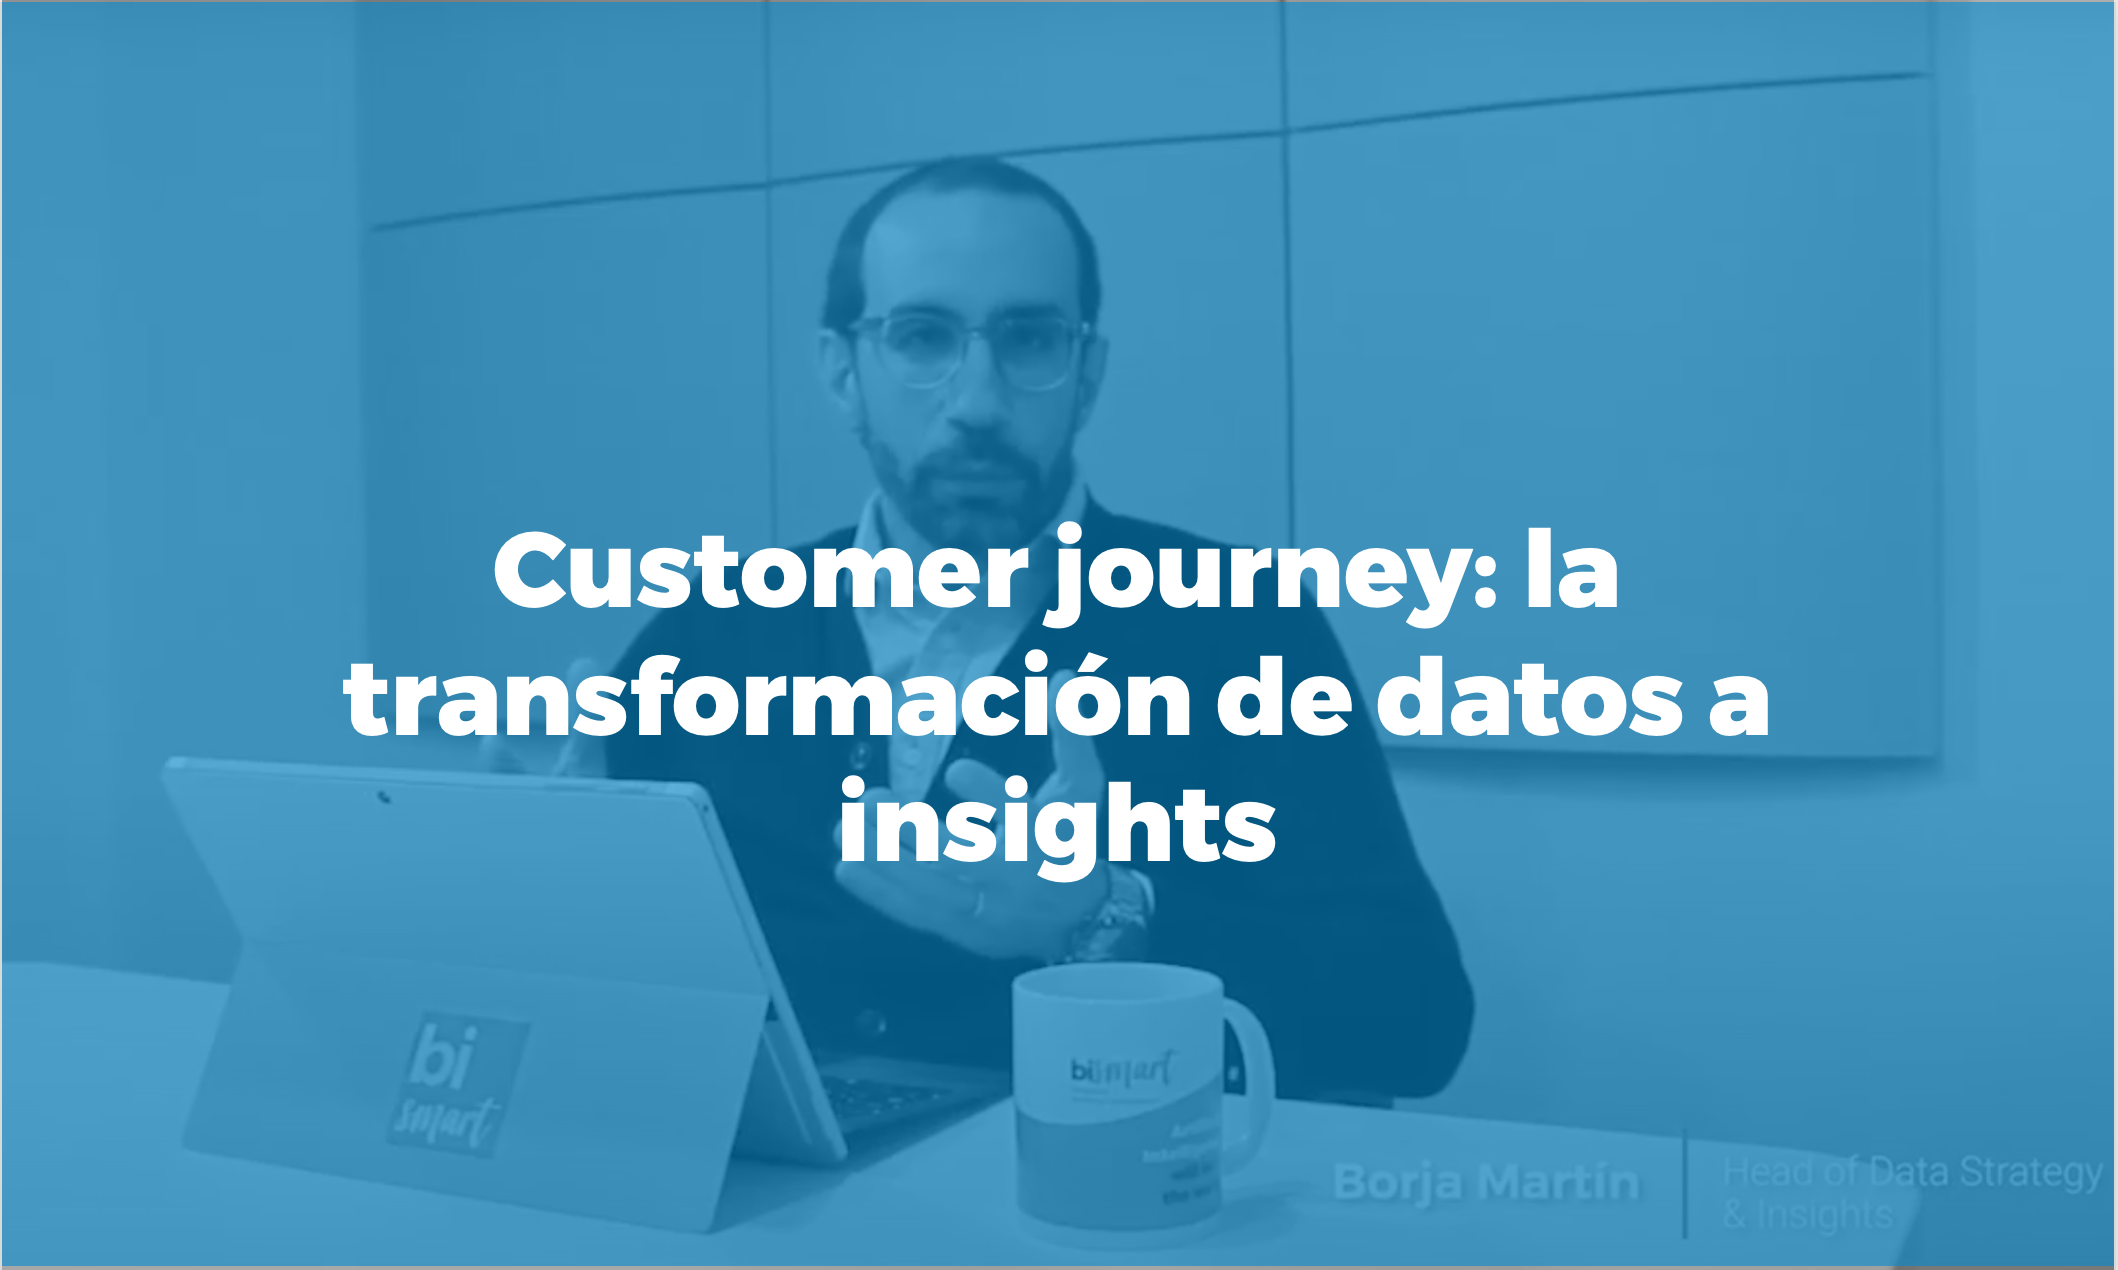 Píldora formativa customer journey: transforma los datos en insights